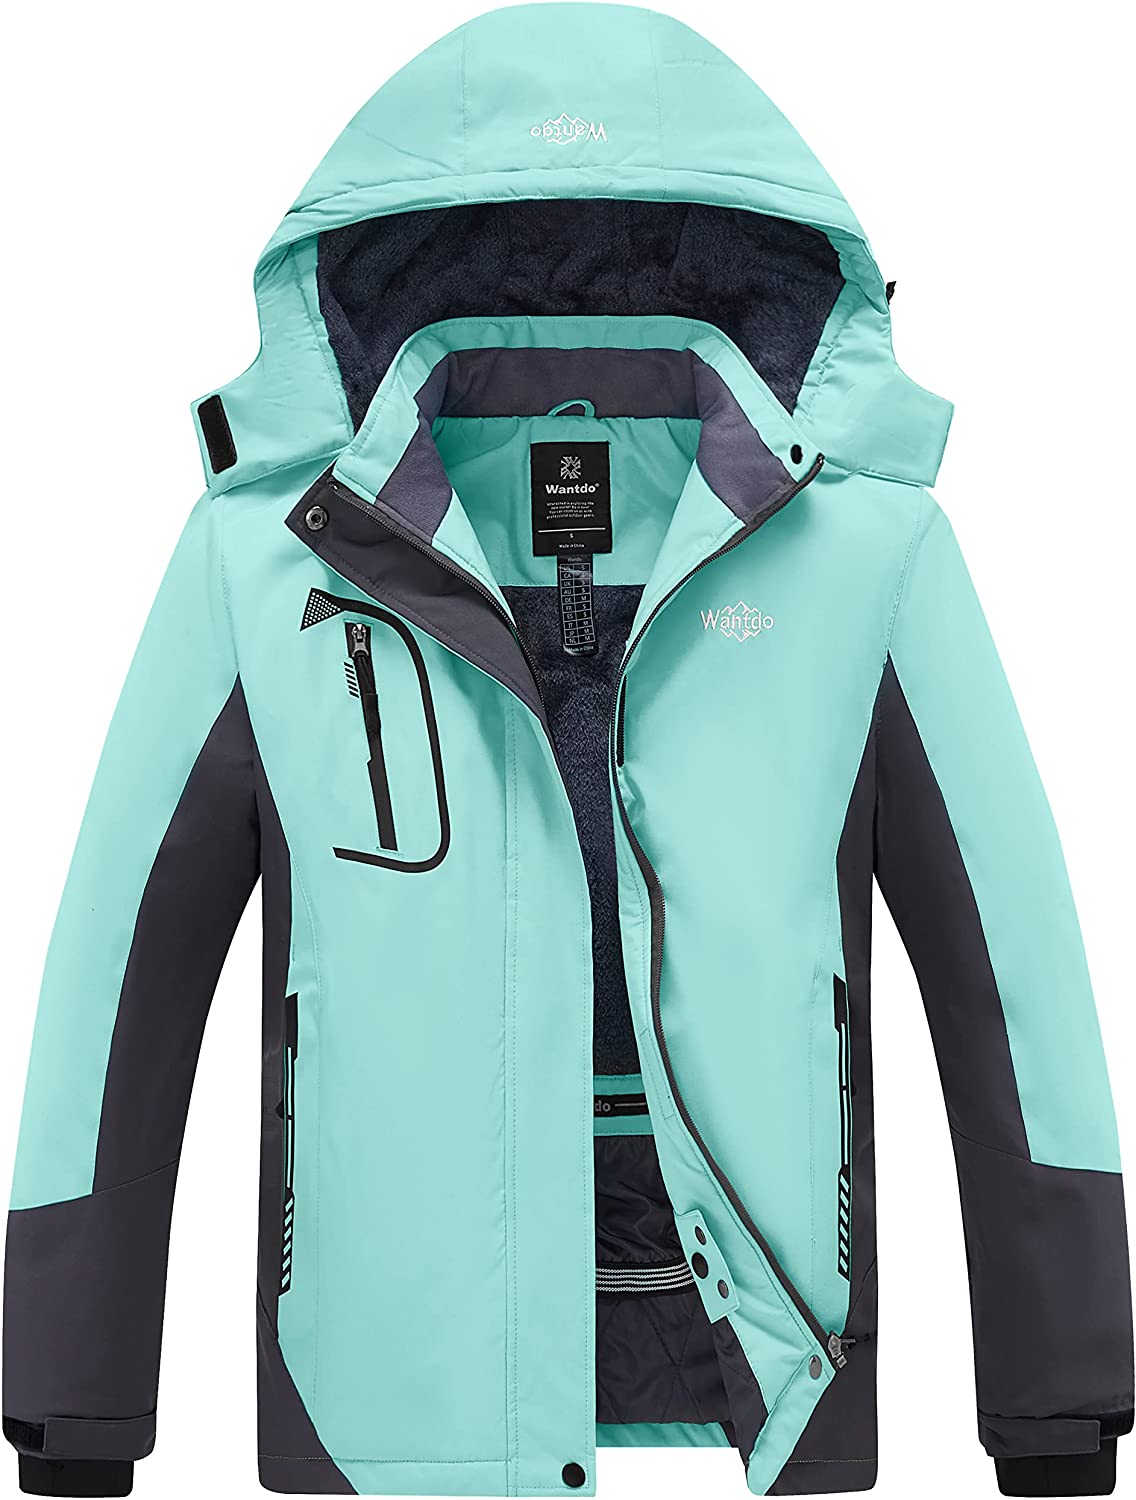 Details about   Wantdo Women's Mountain Waterproof Ski Jacket Windproof Rain Jacket Winter Warm 